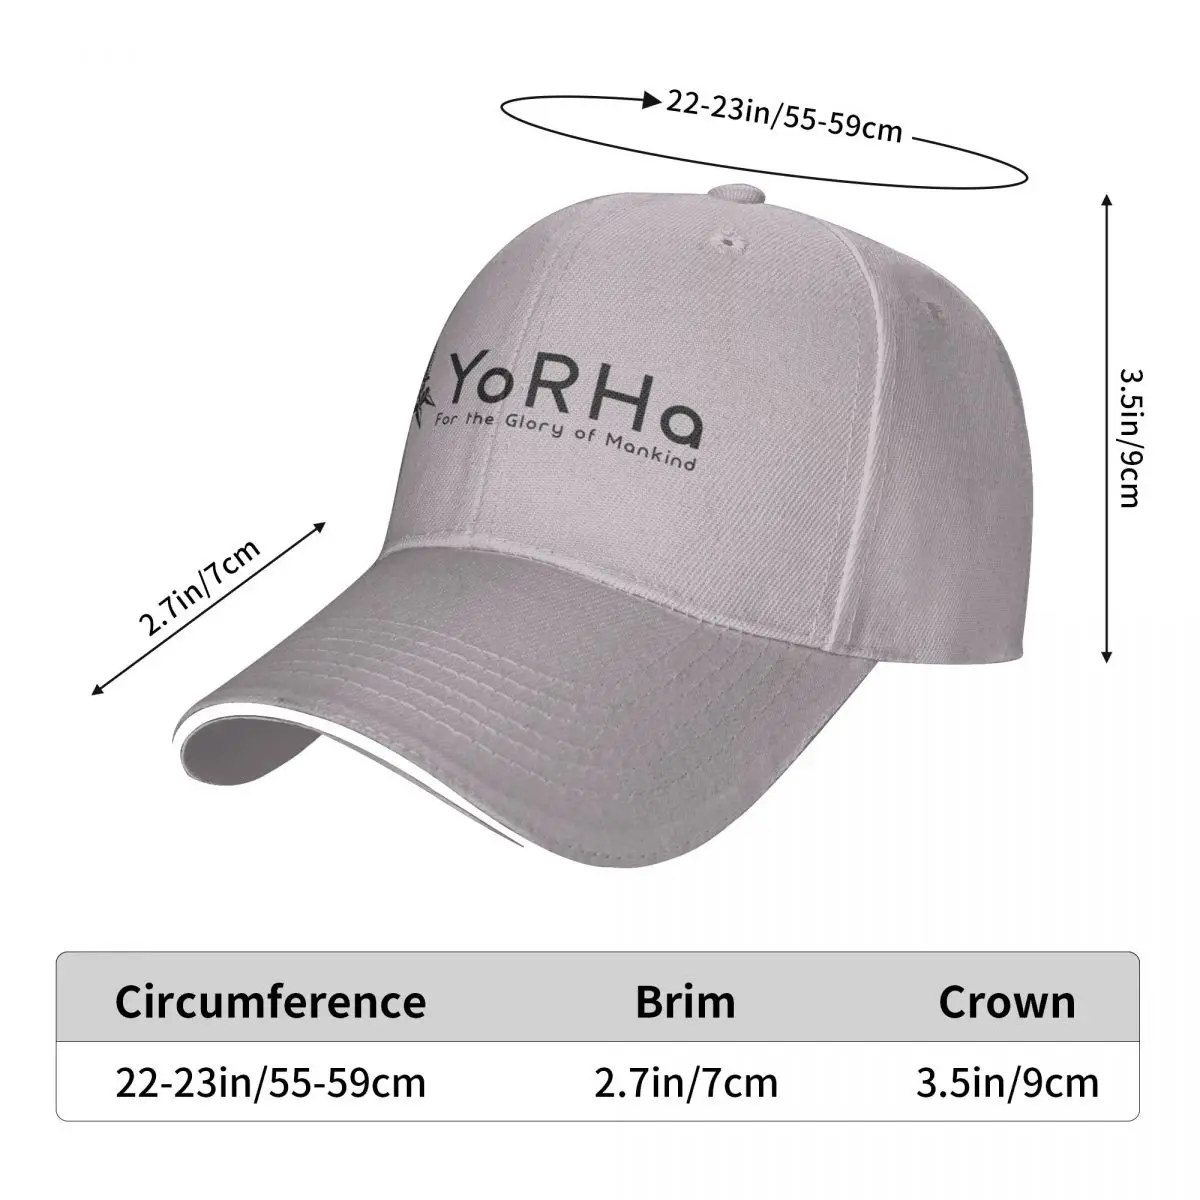 YoRHa - Negru Capac șapcă de baseball hat om pentru soare pescuit pălărie pentru bărbați pălării pentru Femei